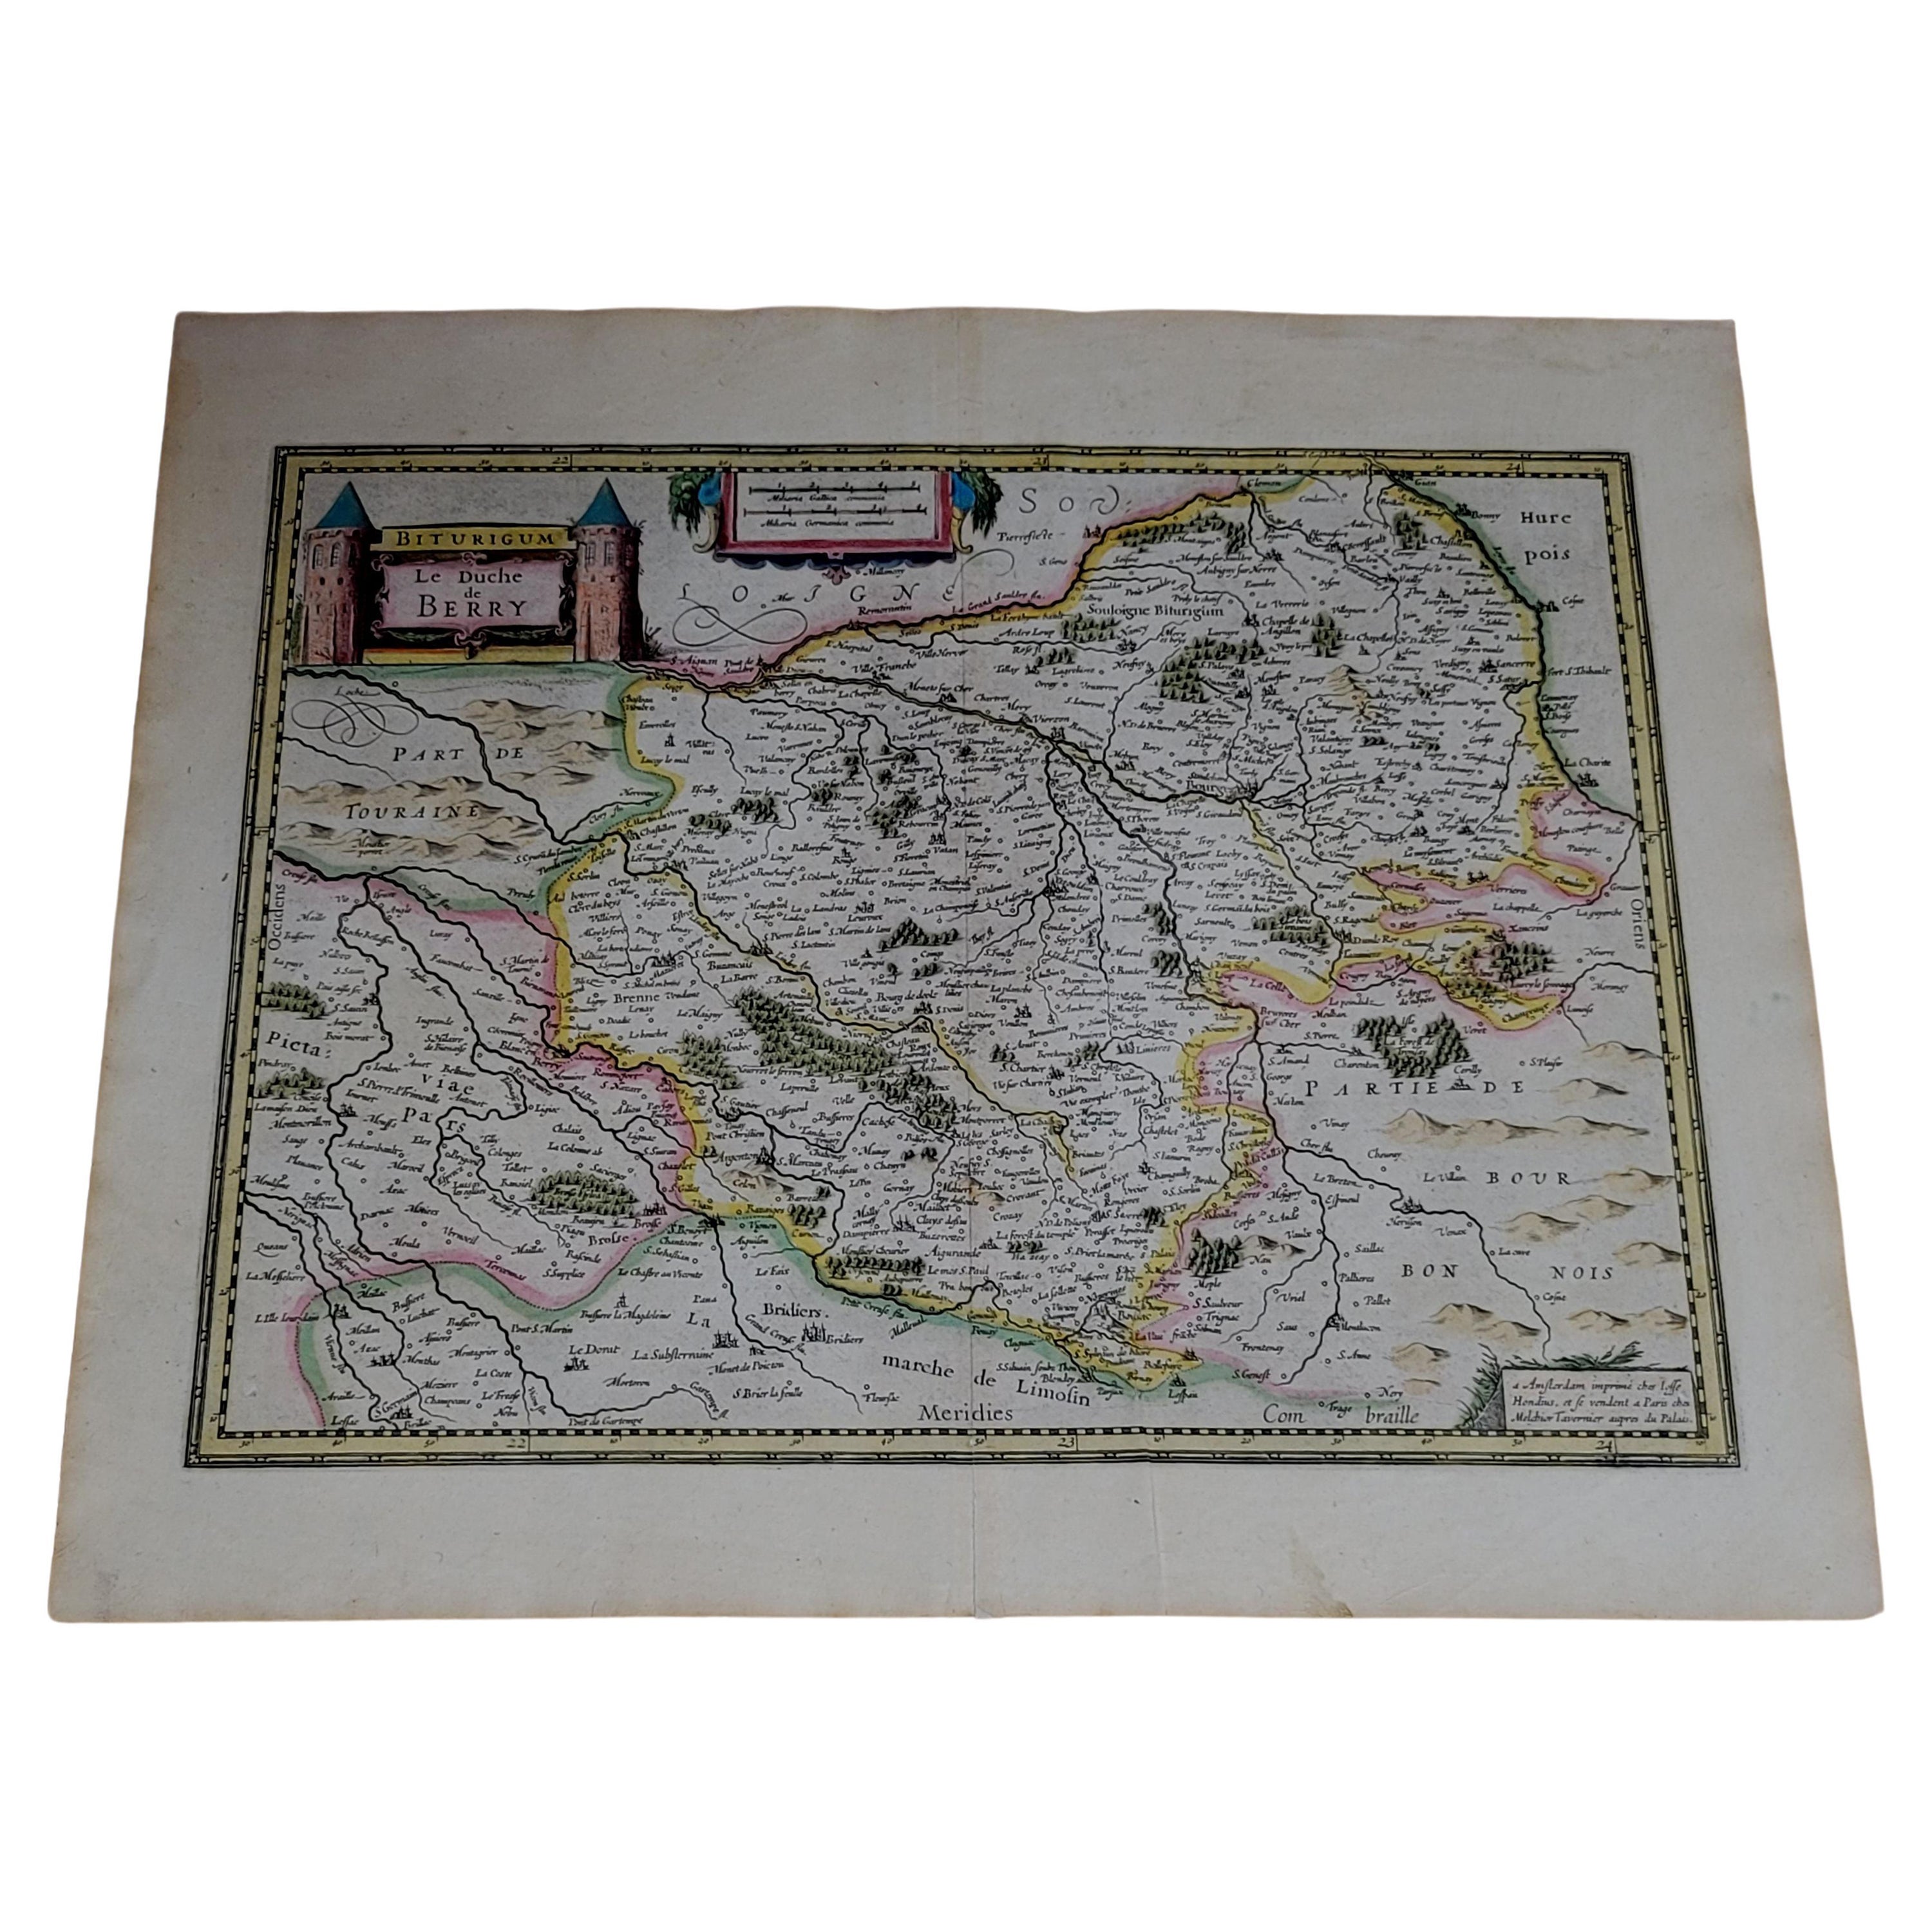 1633 Karte, mit dem Titel „La Douche De Berry“, Original handkoloriertes Ric.0005